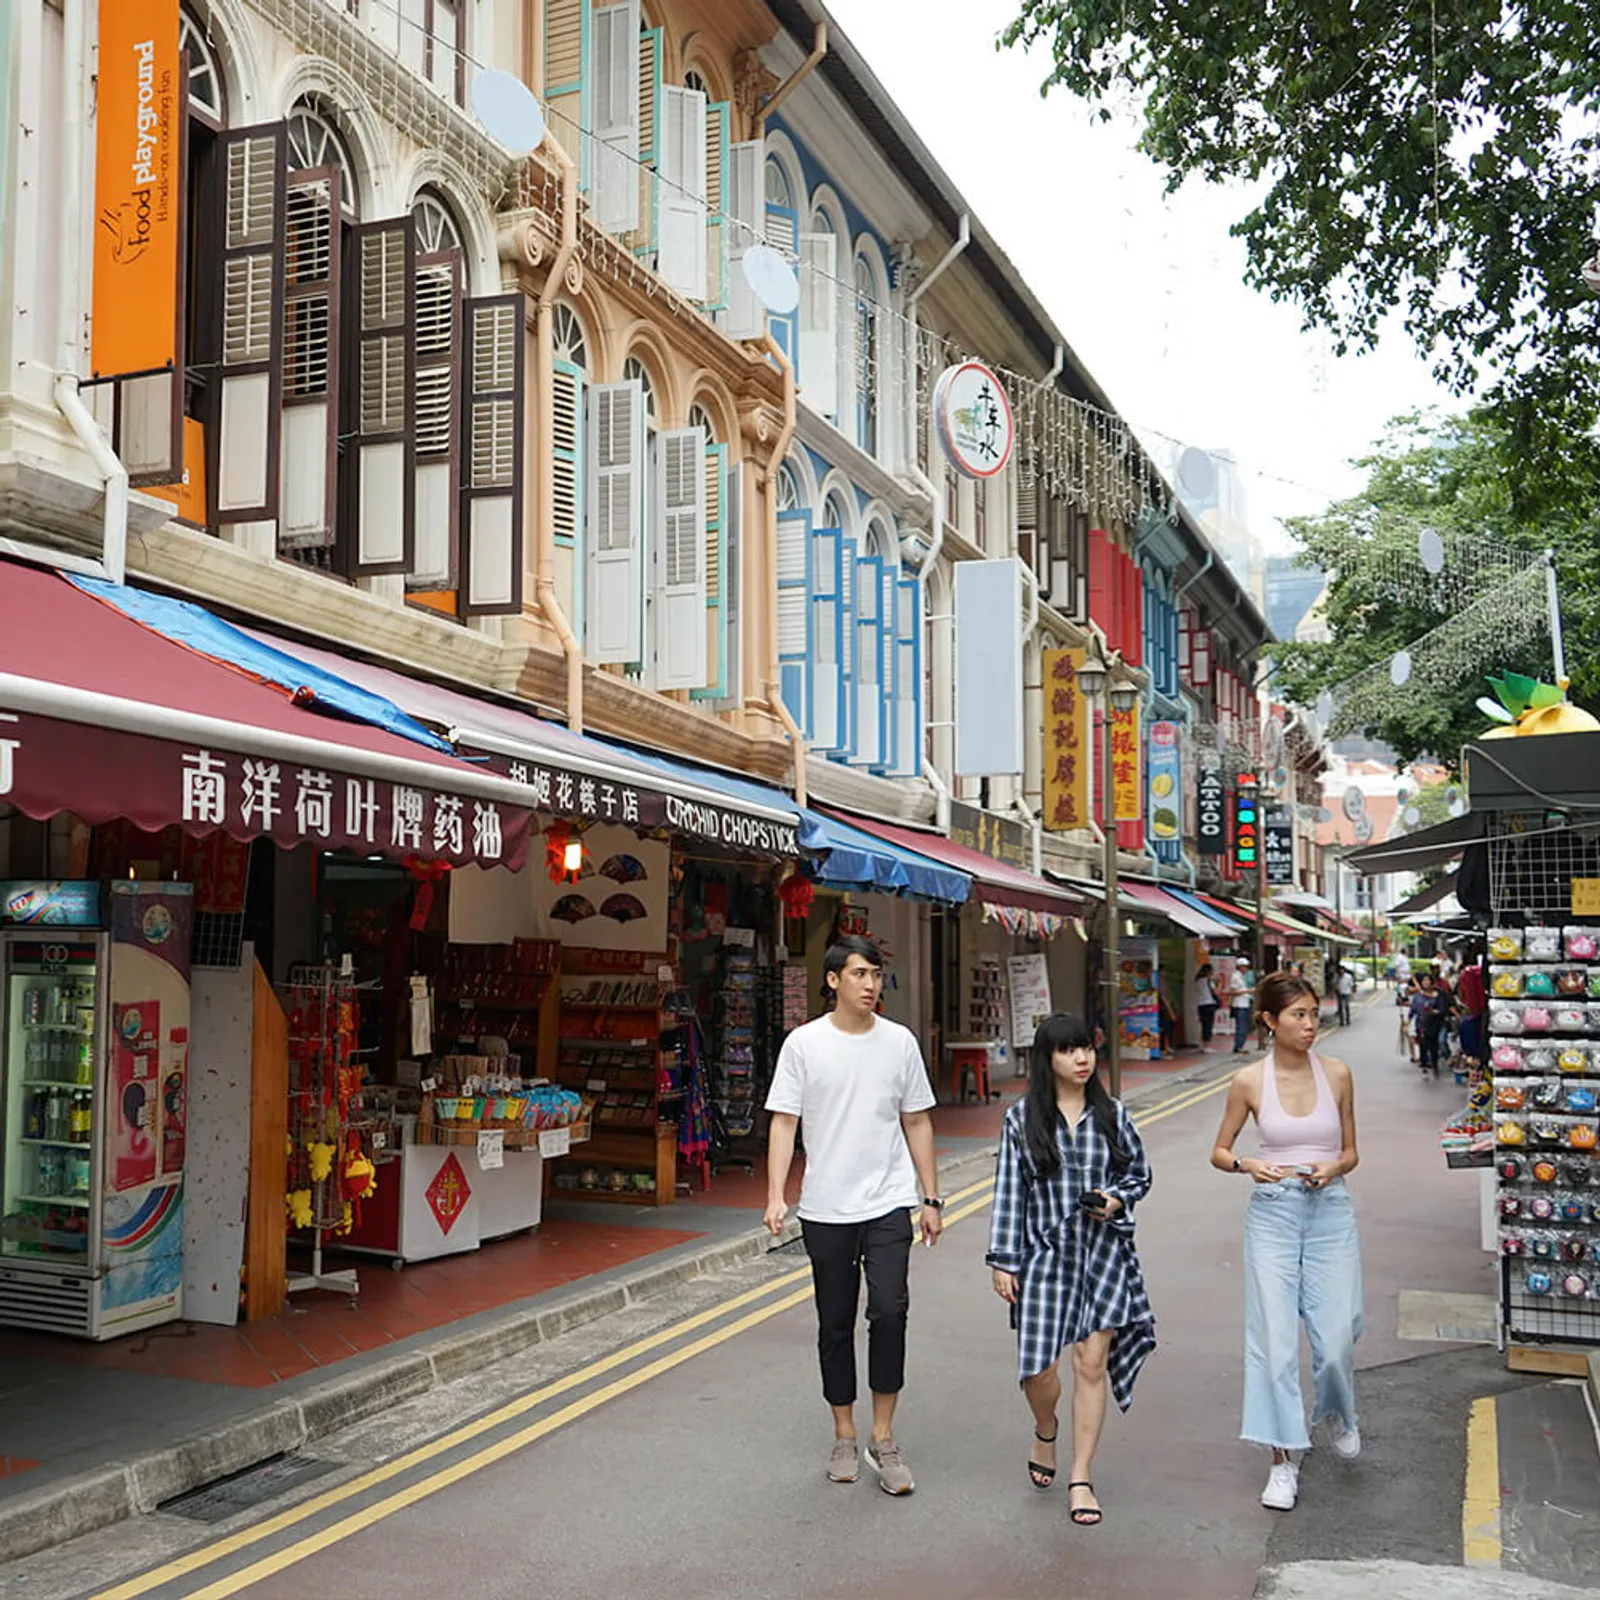 Rekomendasi Hotel dan Hiburan di Chinatown Singapura, Autentik Banget!